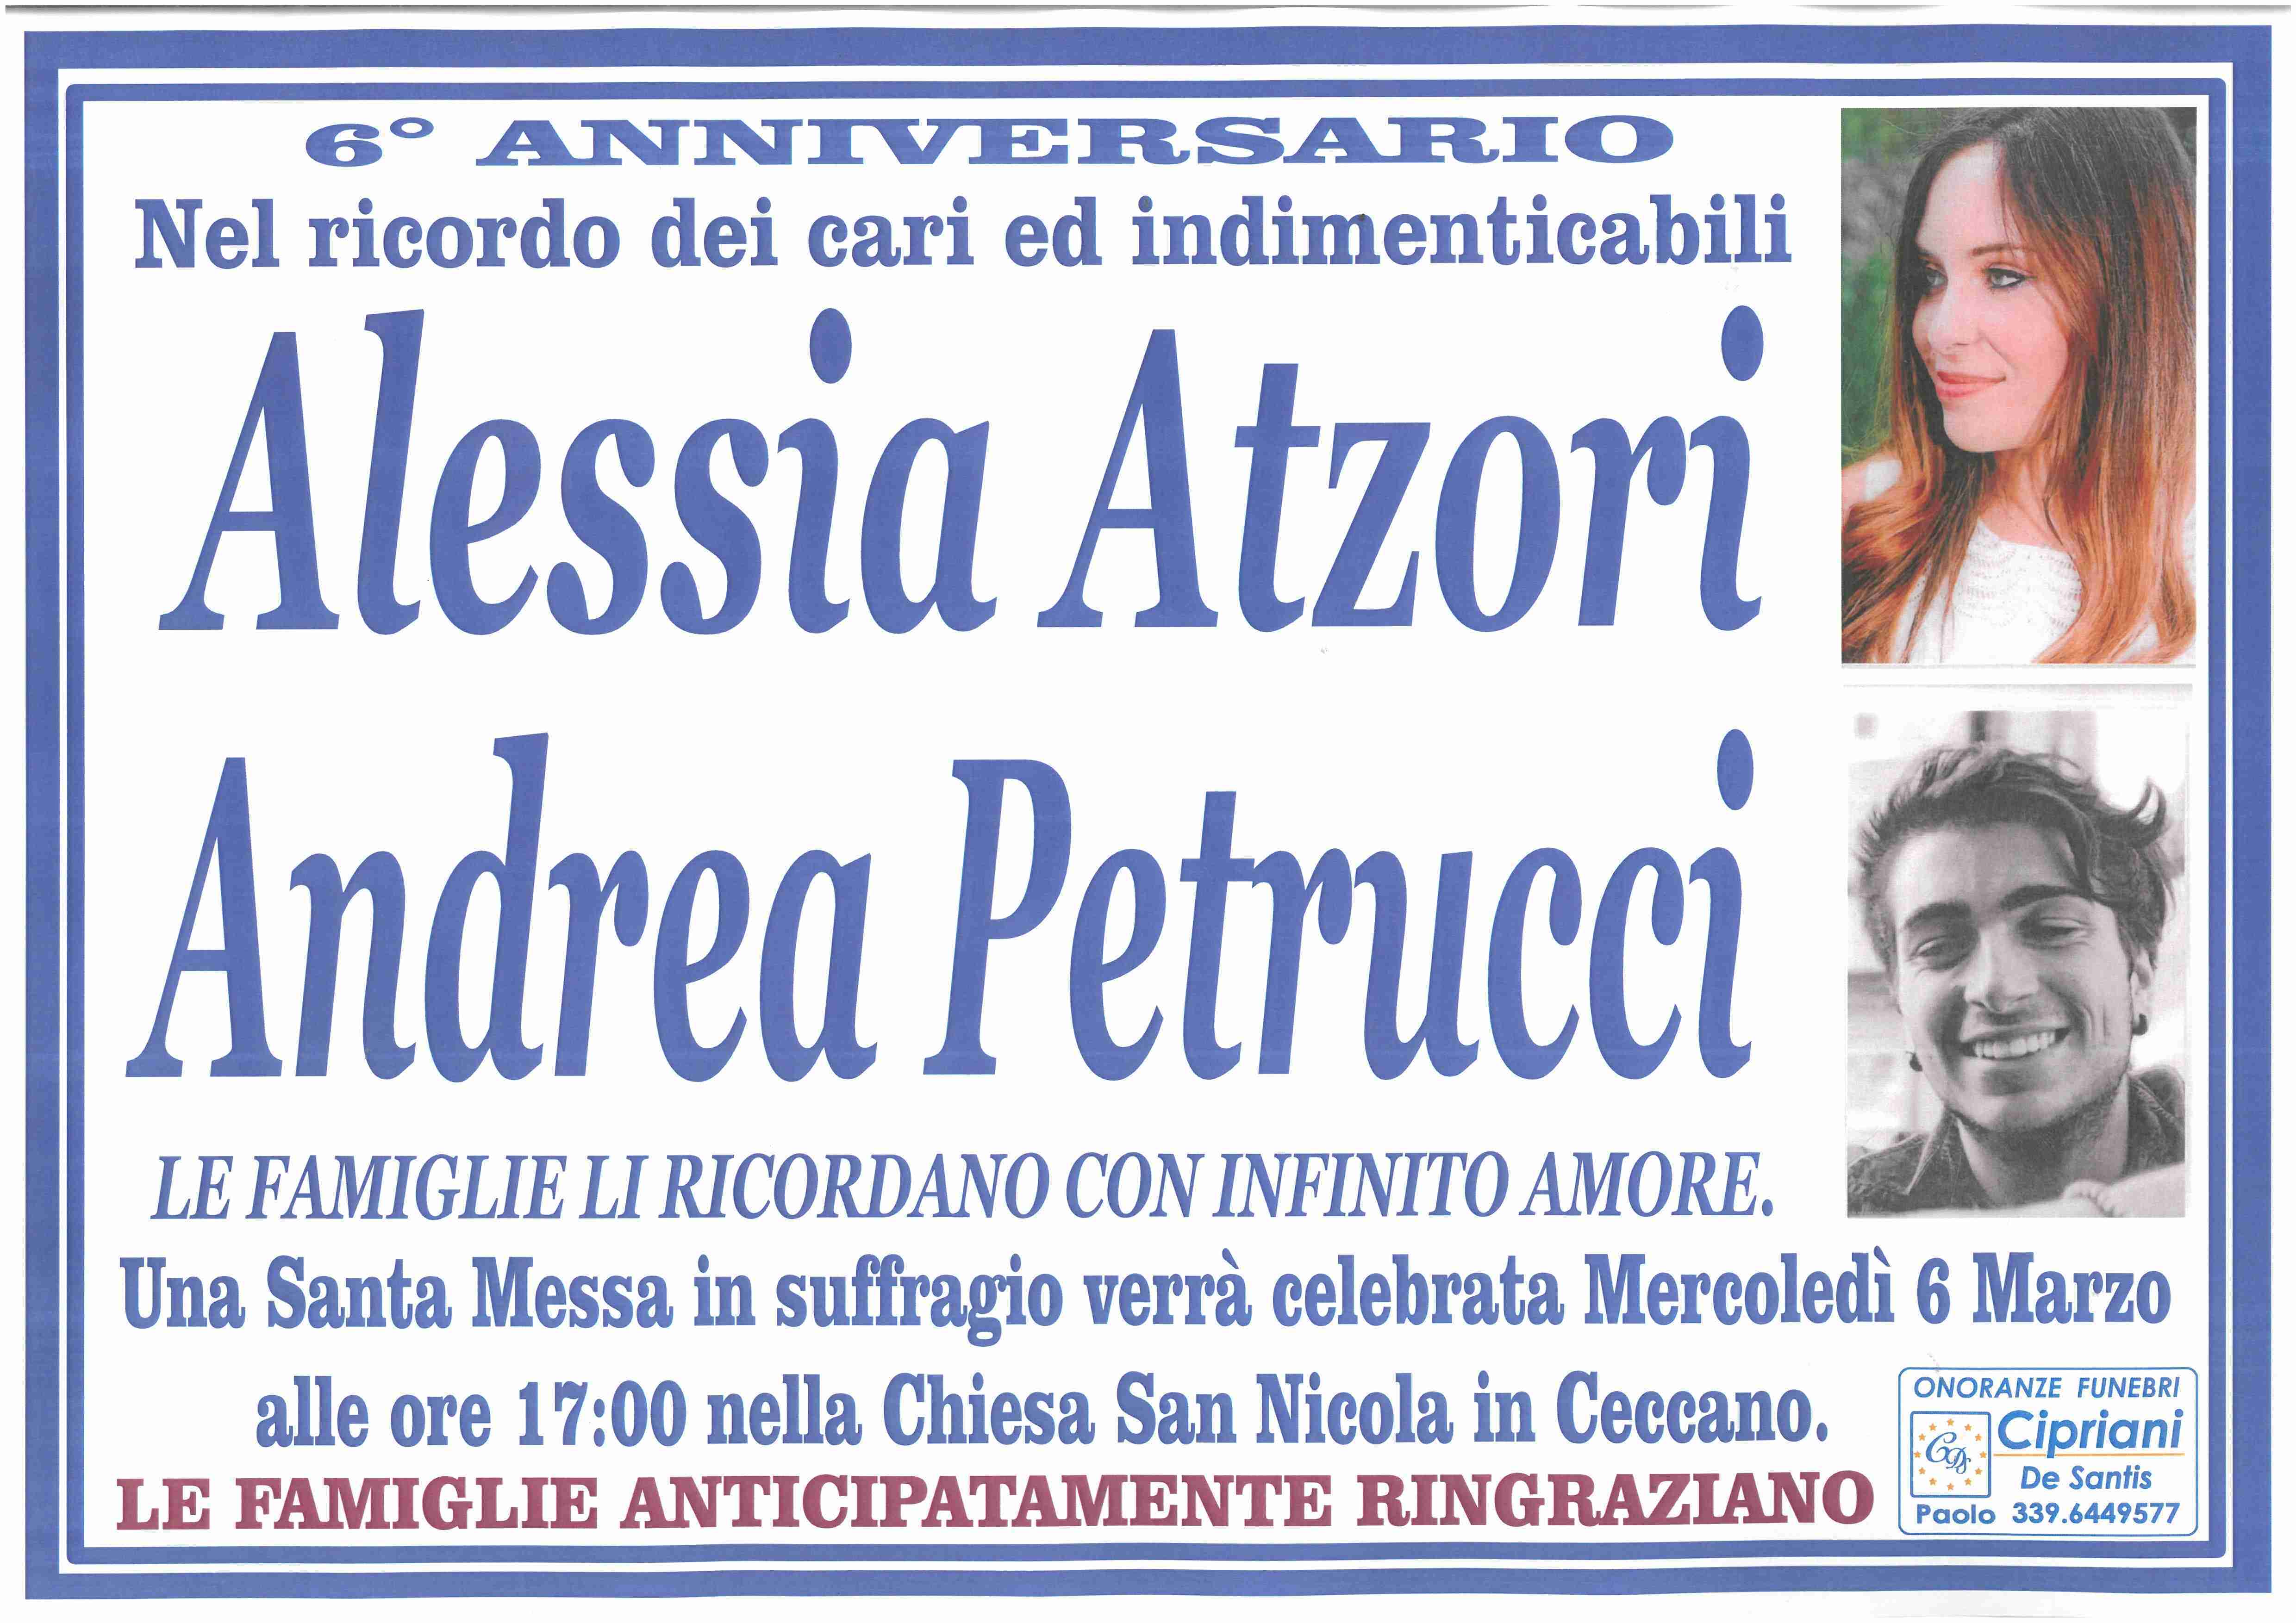 Alessia Atzori Andrea Petrucci